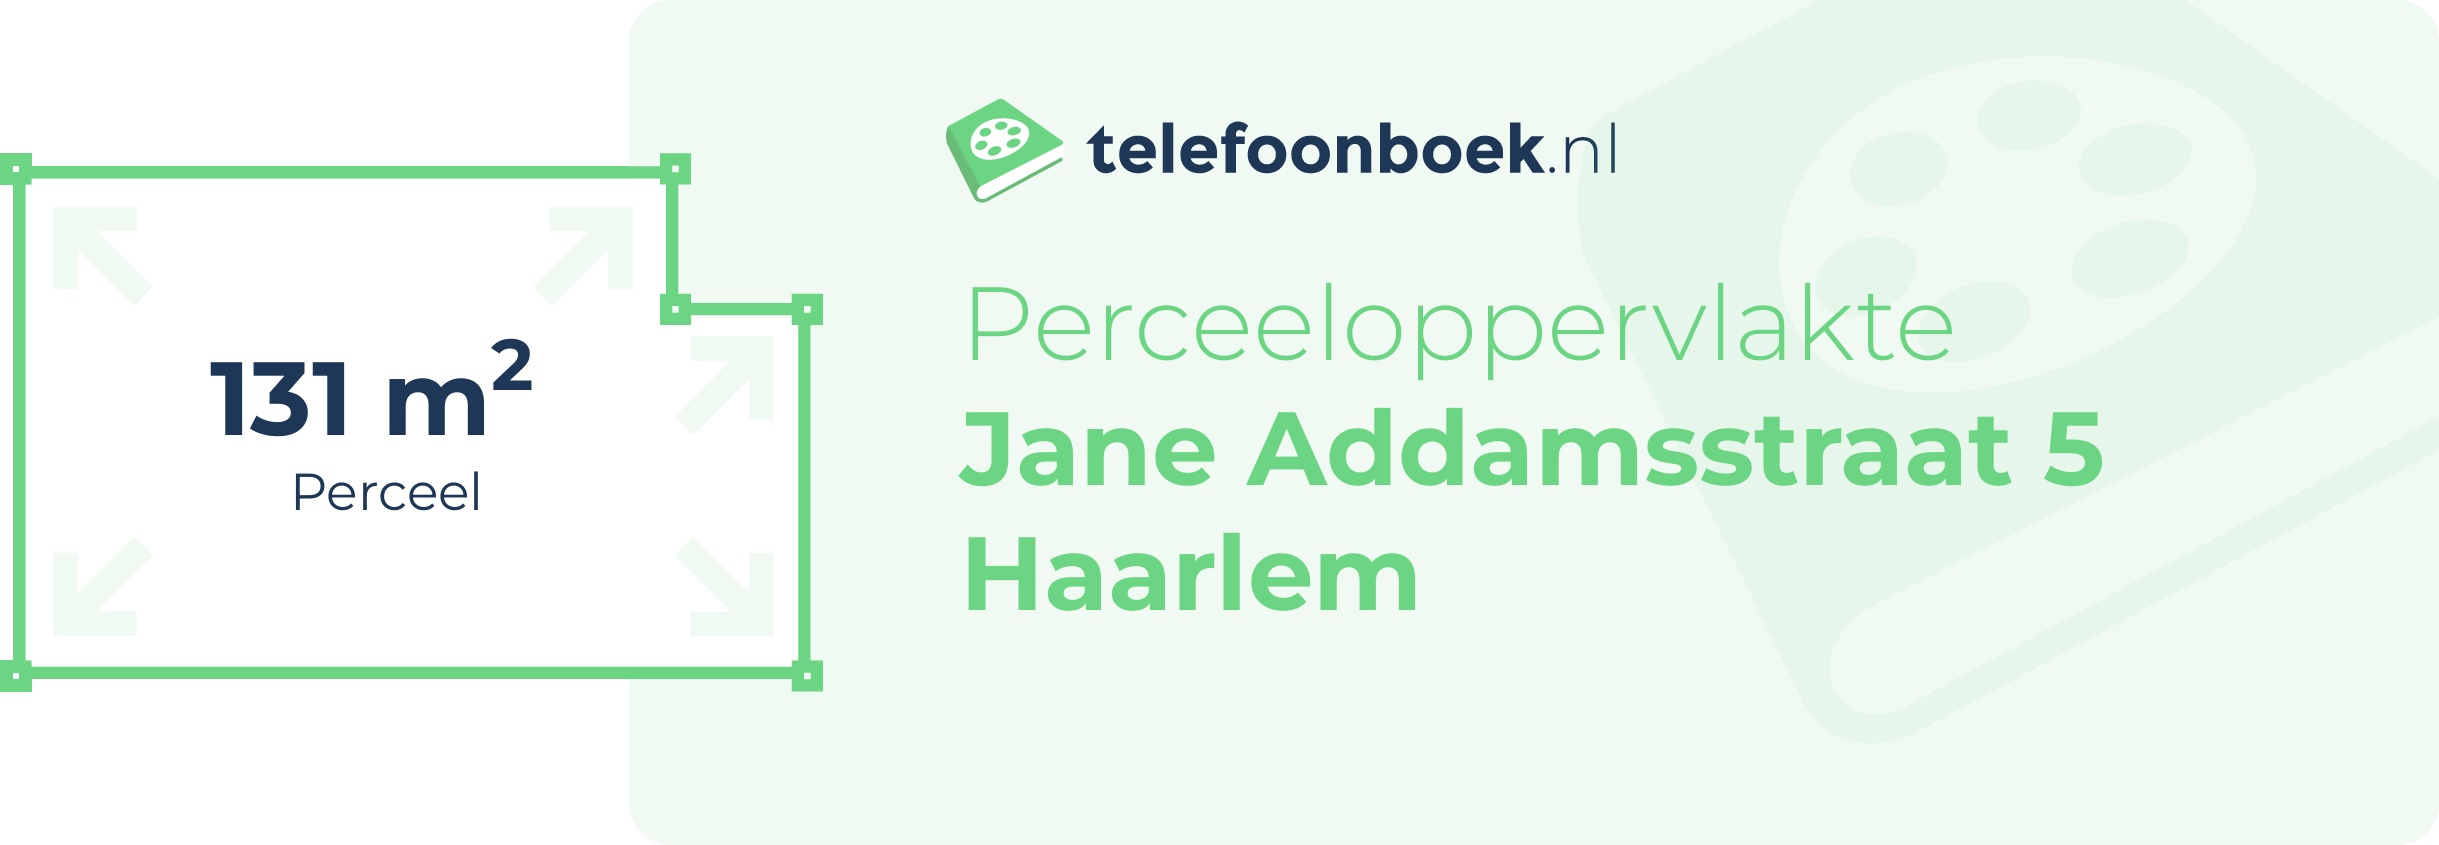 Perceeloppervlakte Jane Addamsstraat 5 Haarlem